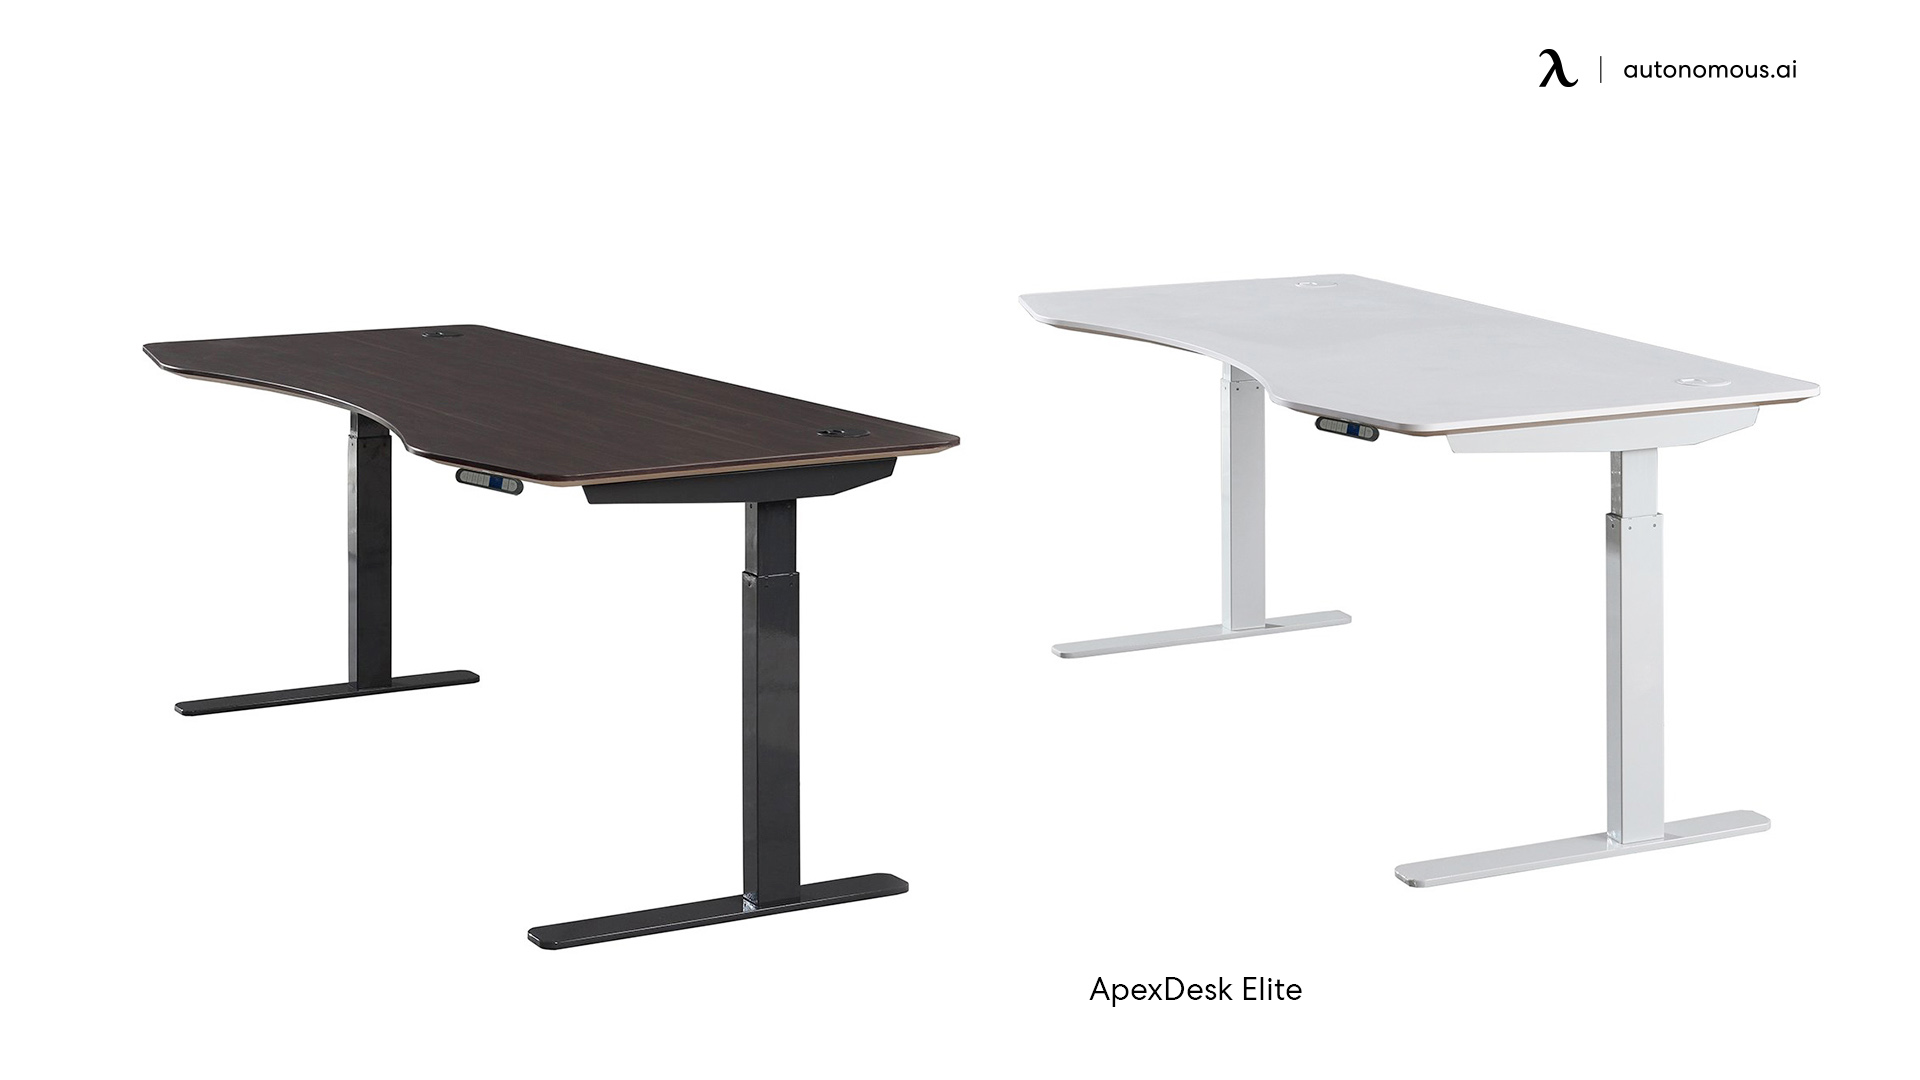 ApexDesk Elite large adjustable desk